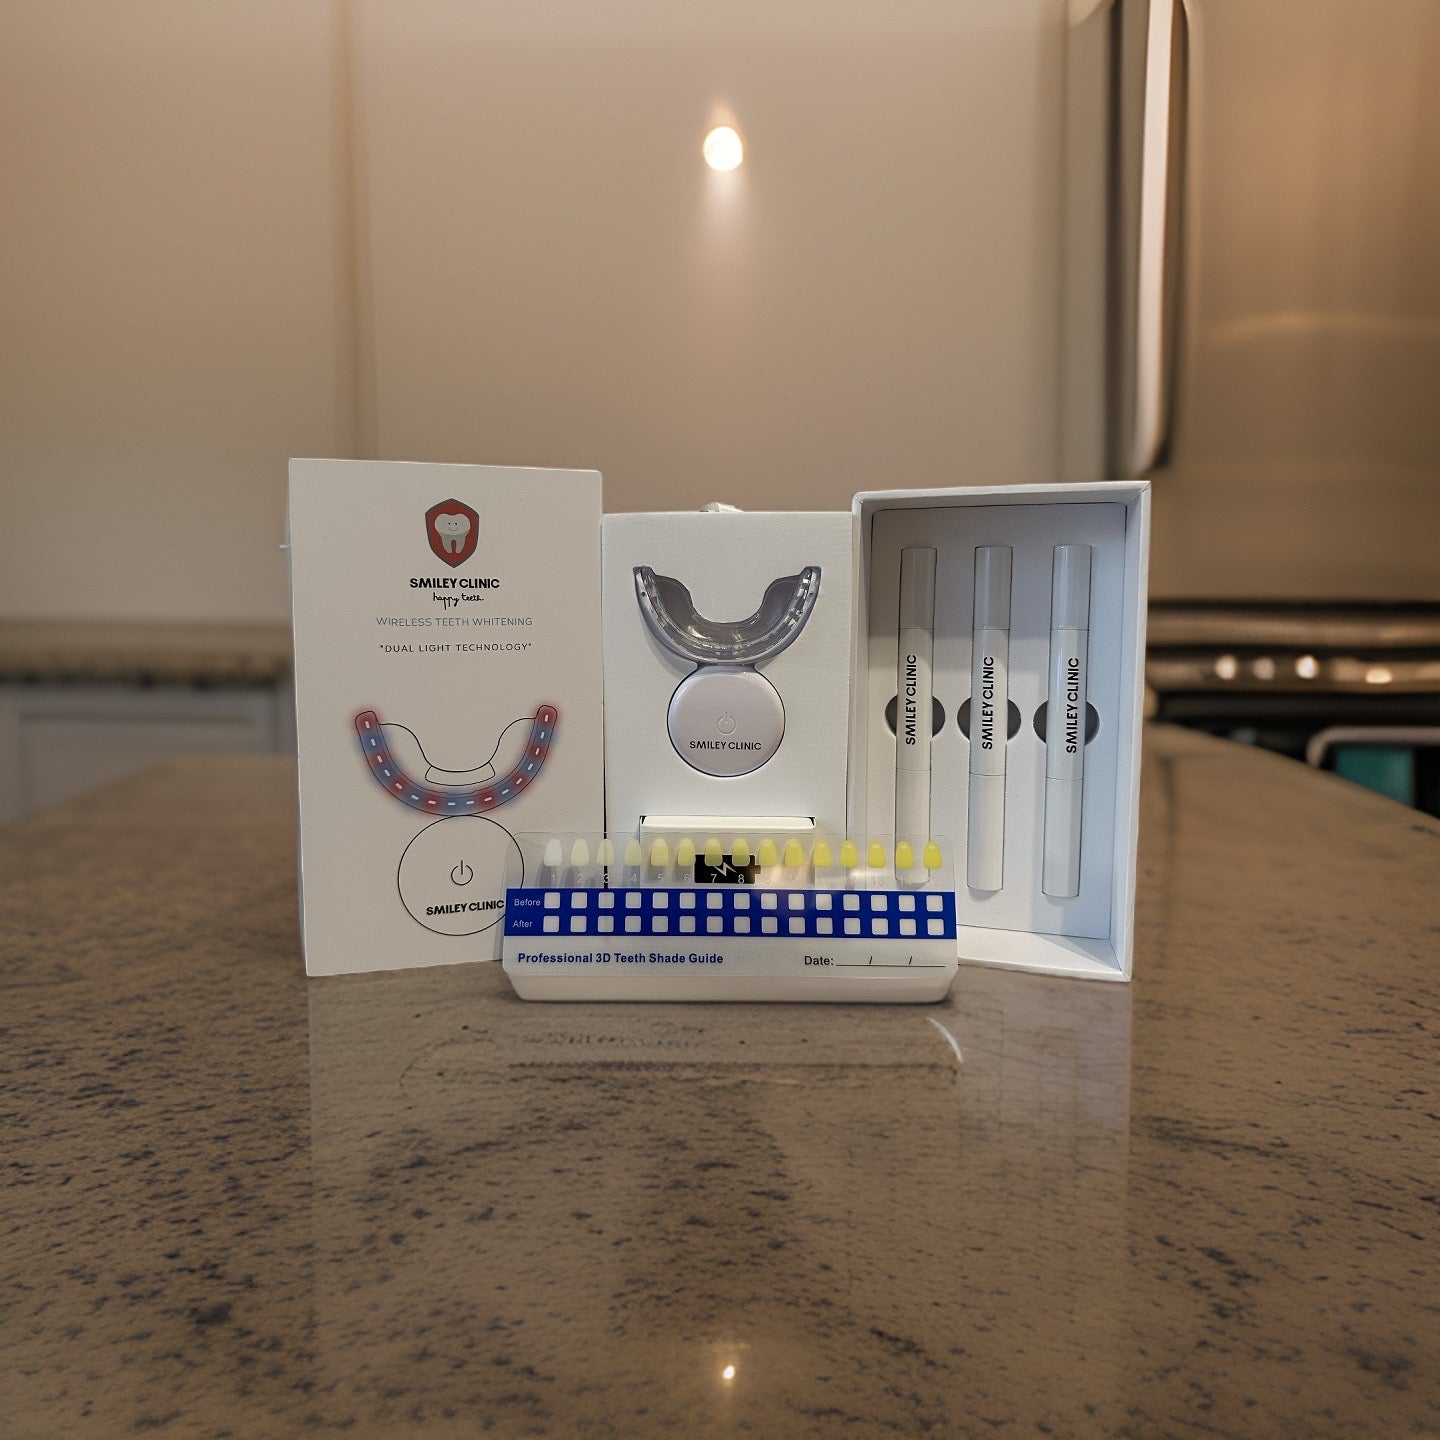 Pro Teeth Whitening Kit